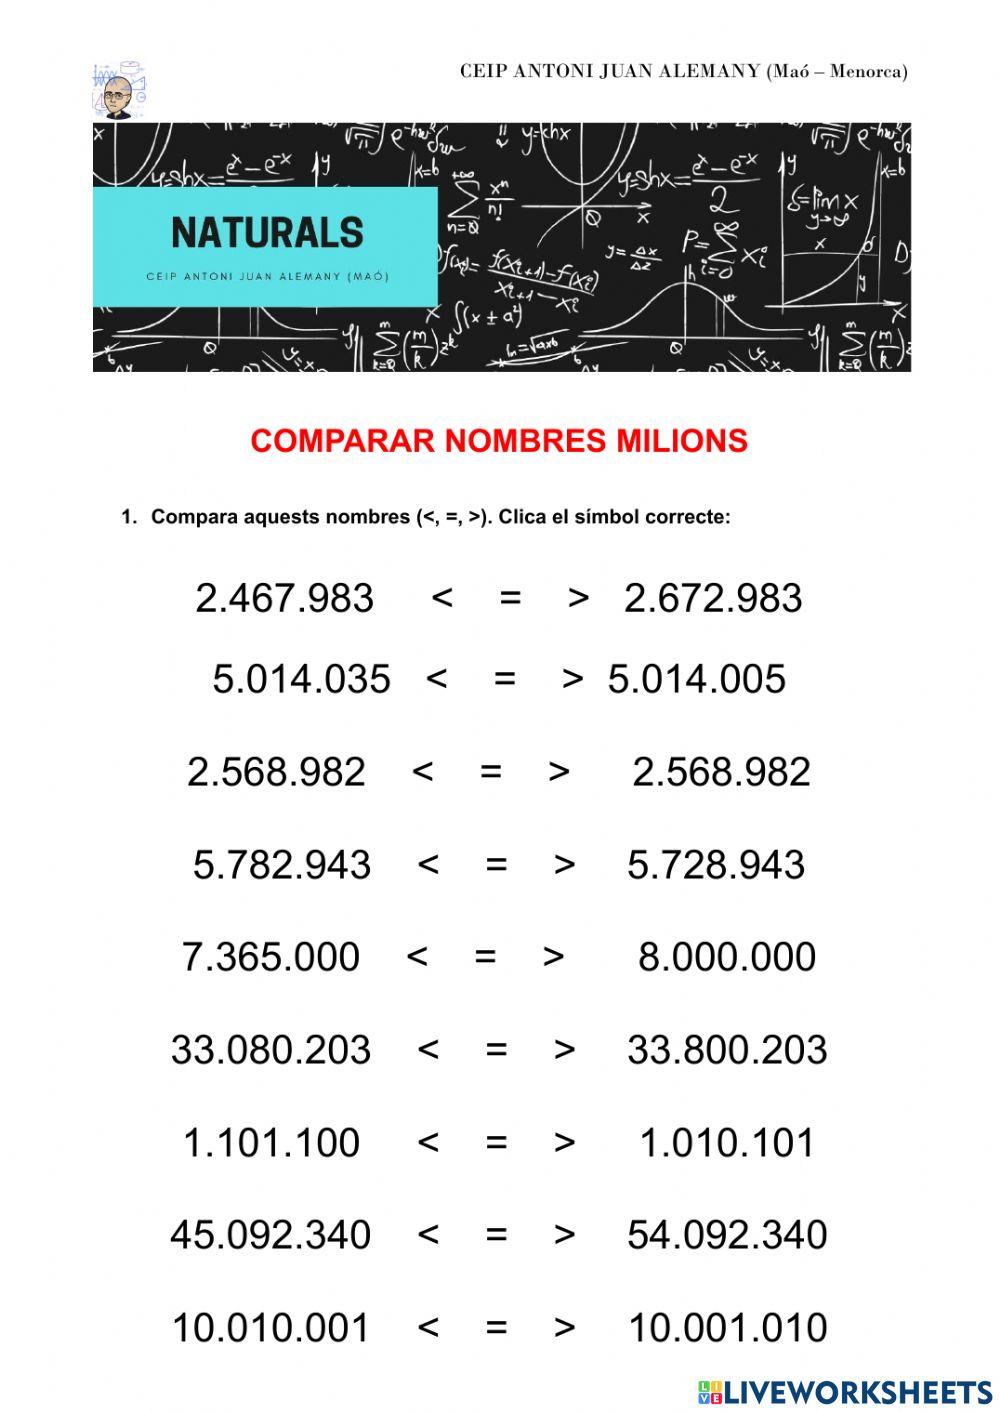 Comparar nombres milions